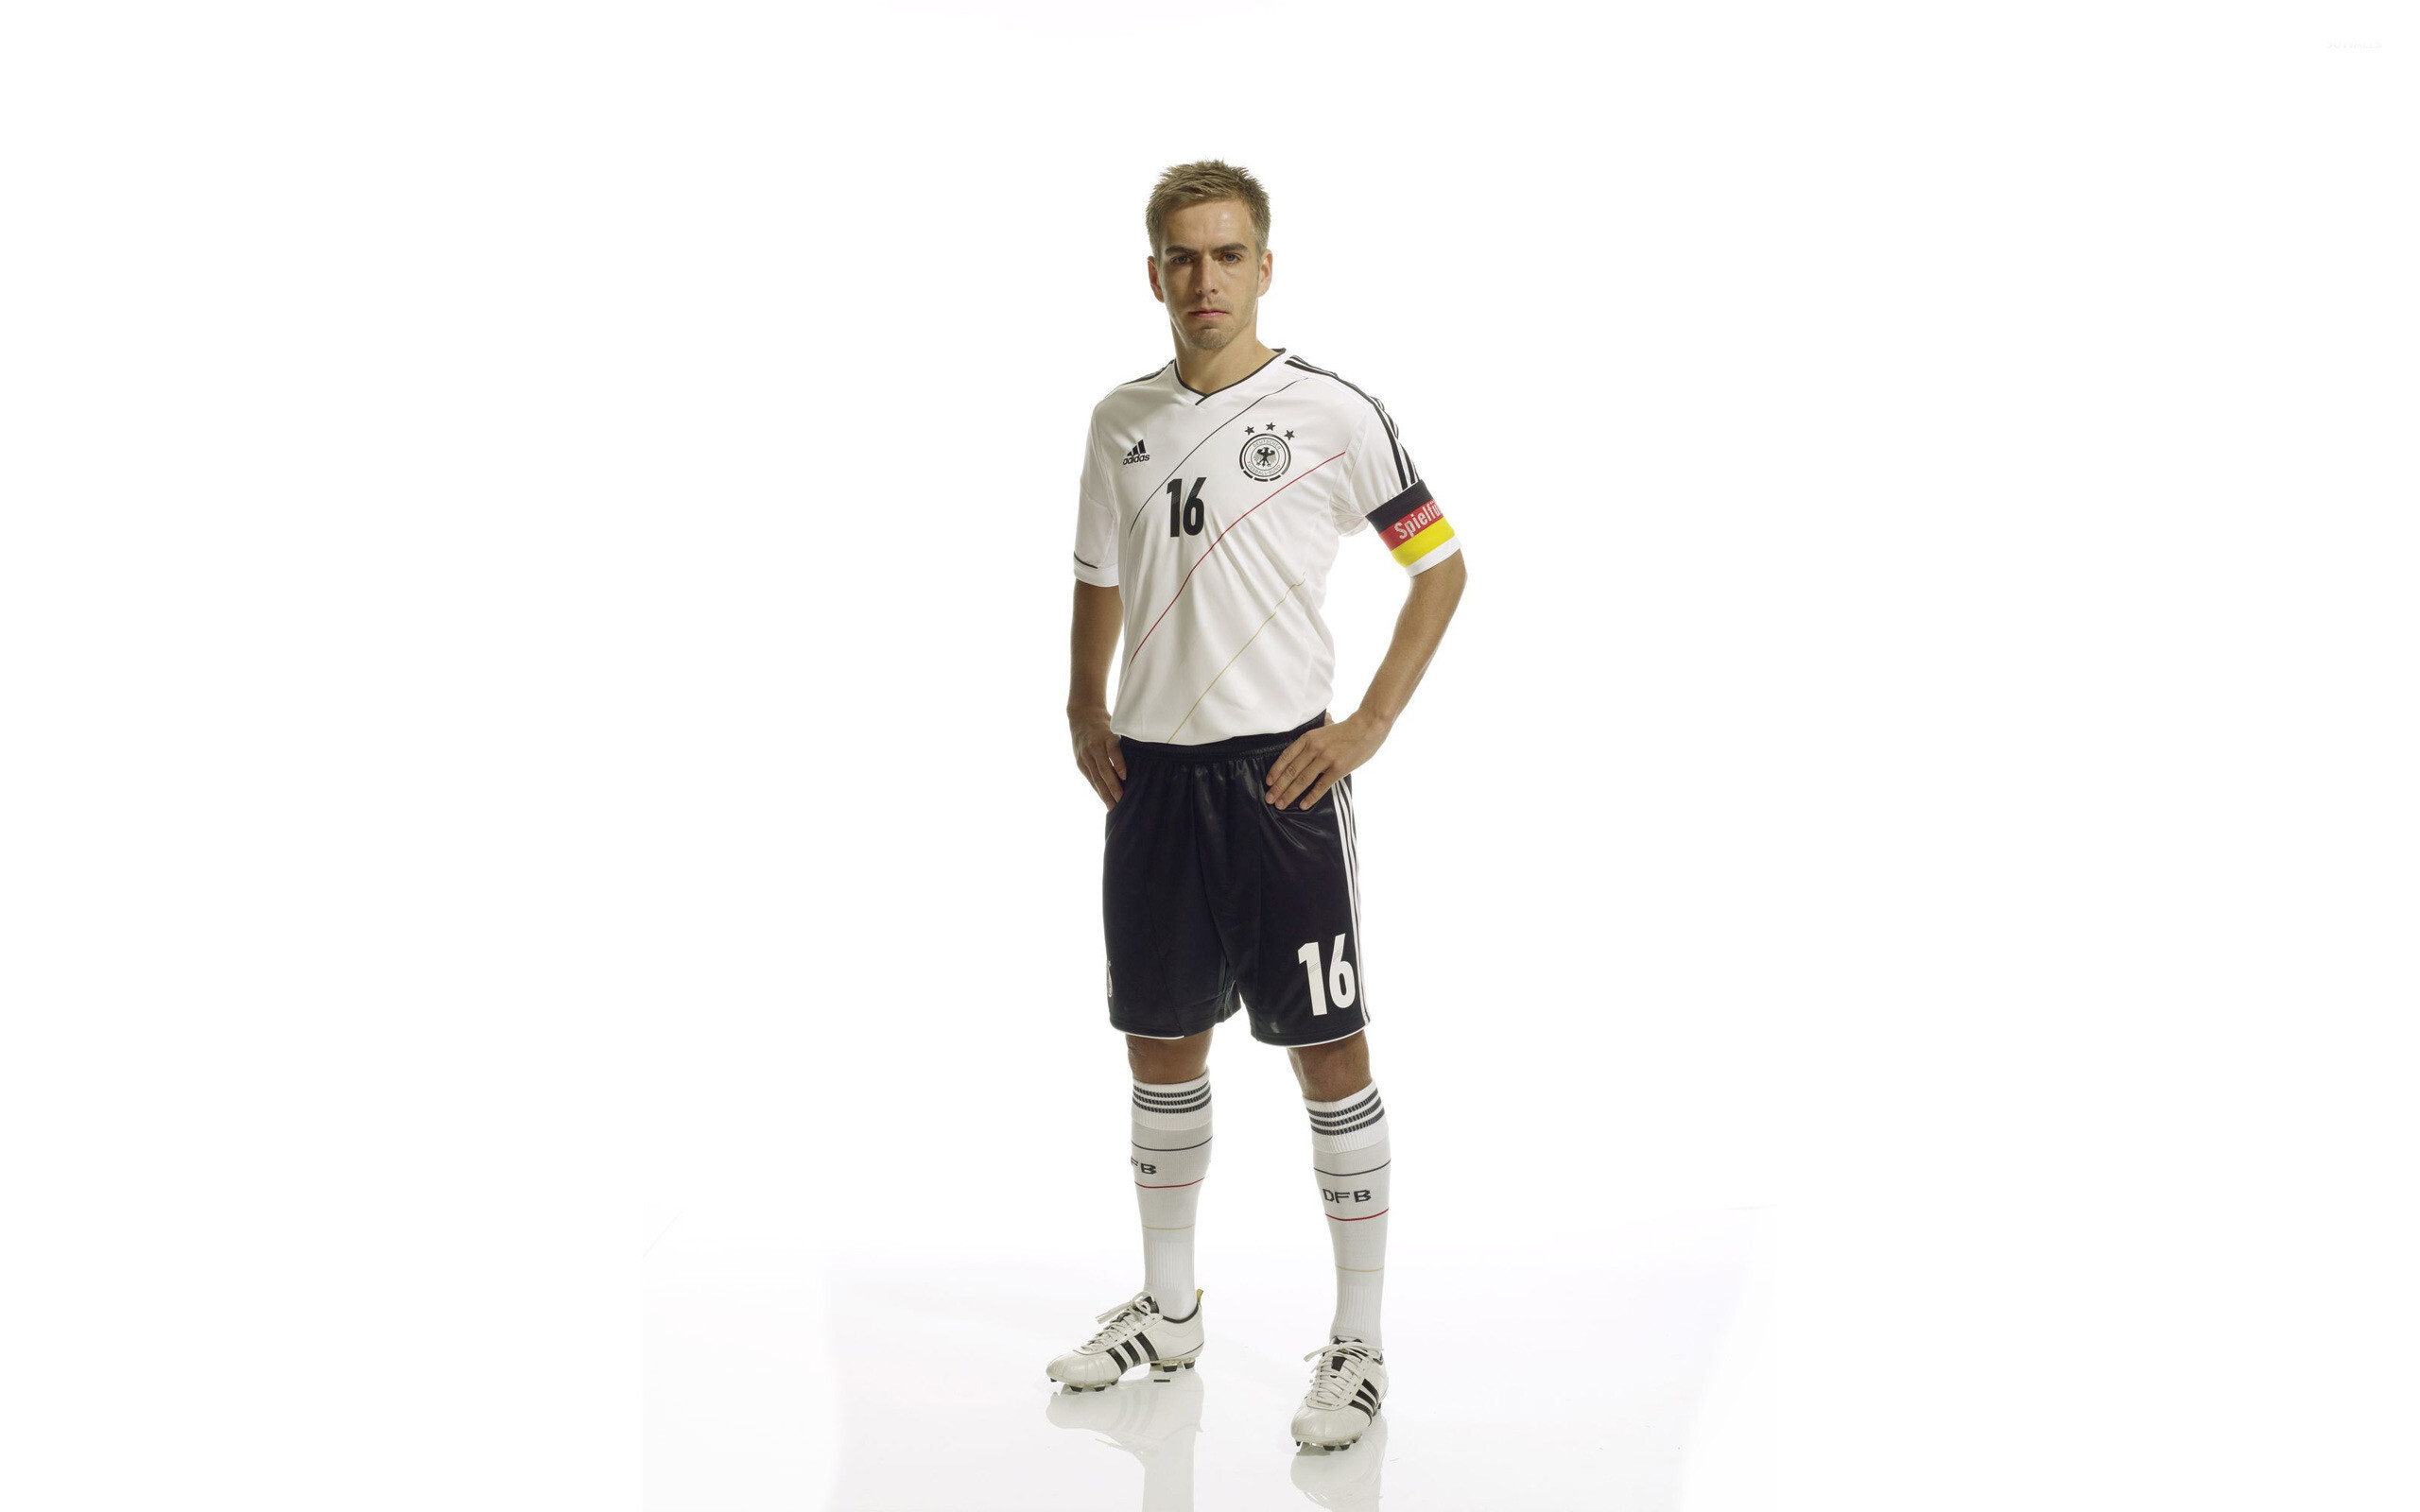 Germany Soccer Team: Philipp Lahm, A former professional full-back for Bayern Munich Bundesliga club. 2560x1600 HD Wallpaper.